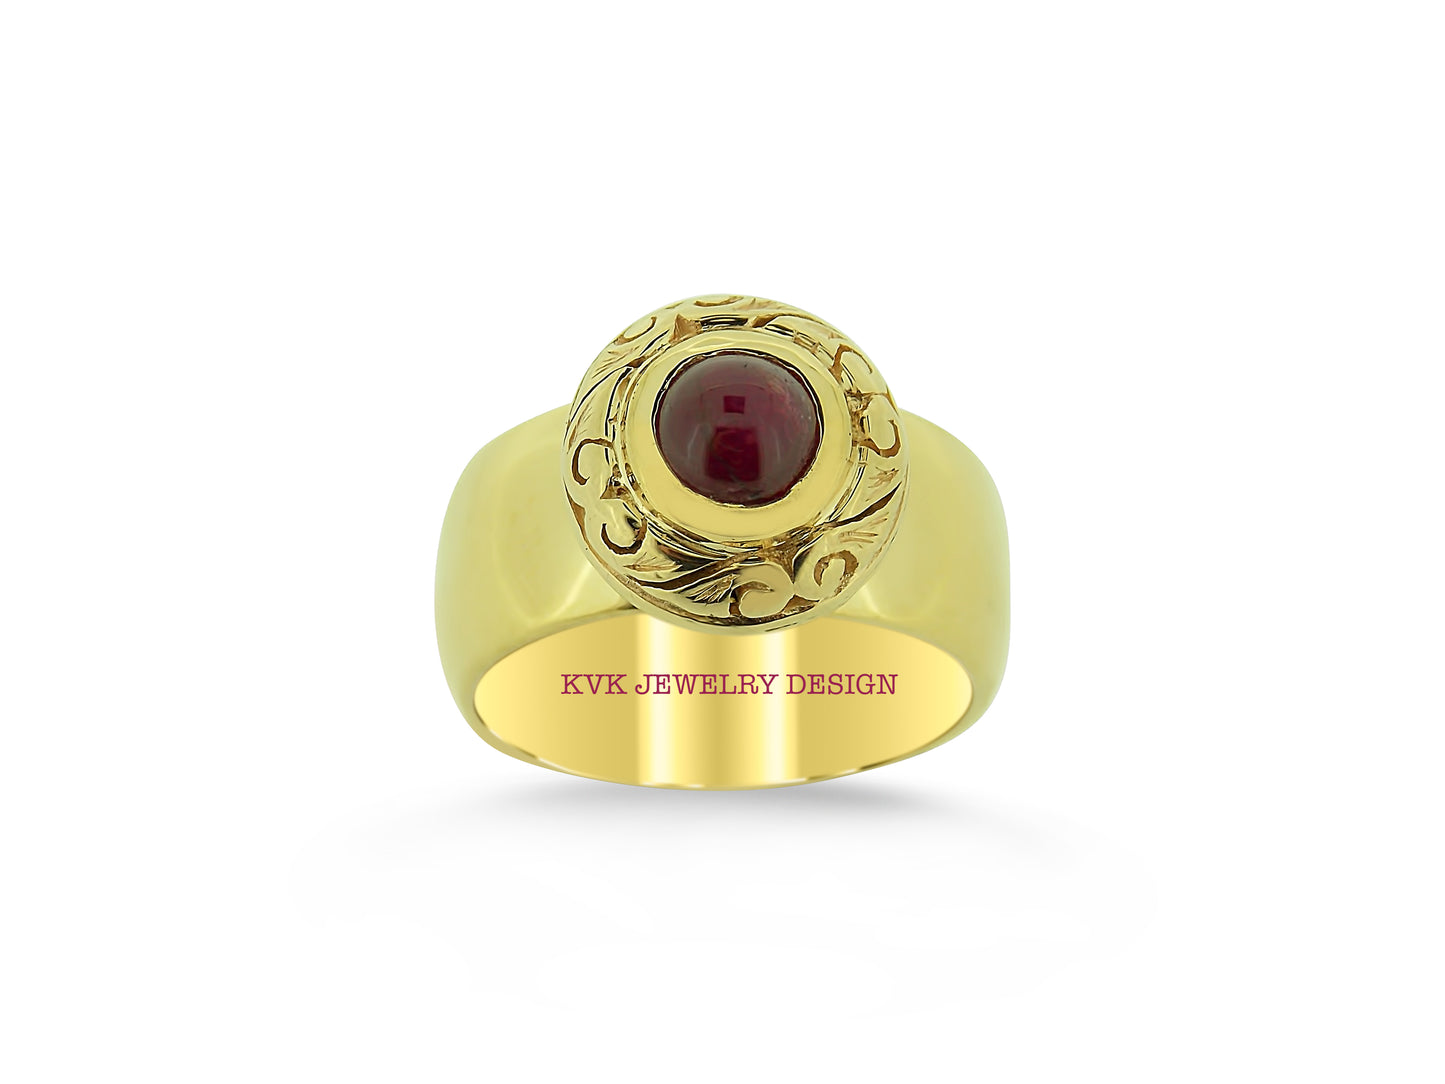 Cabochon Burma Ruby Ring